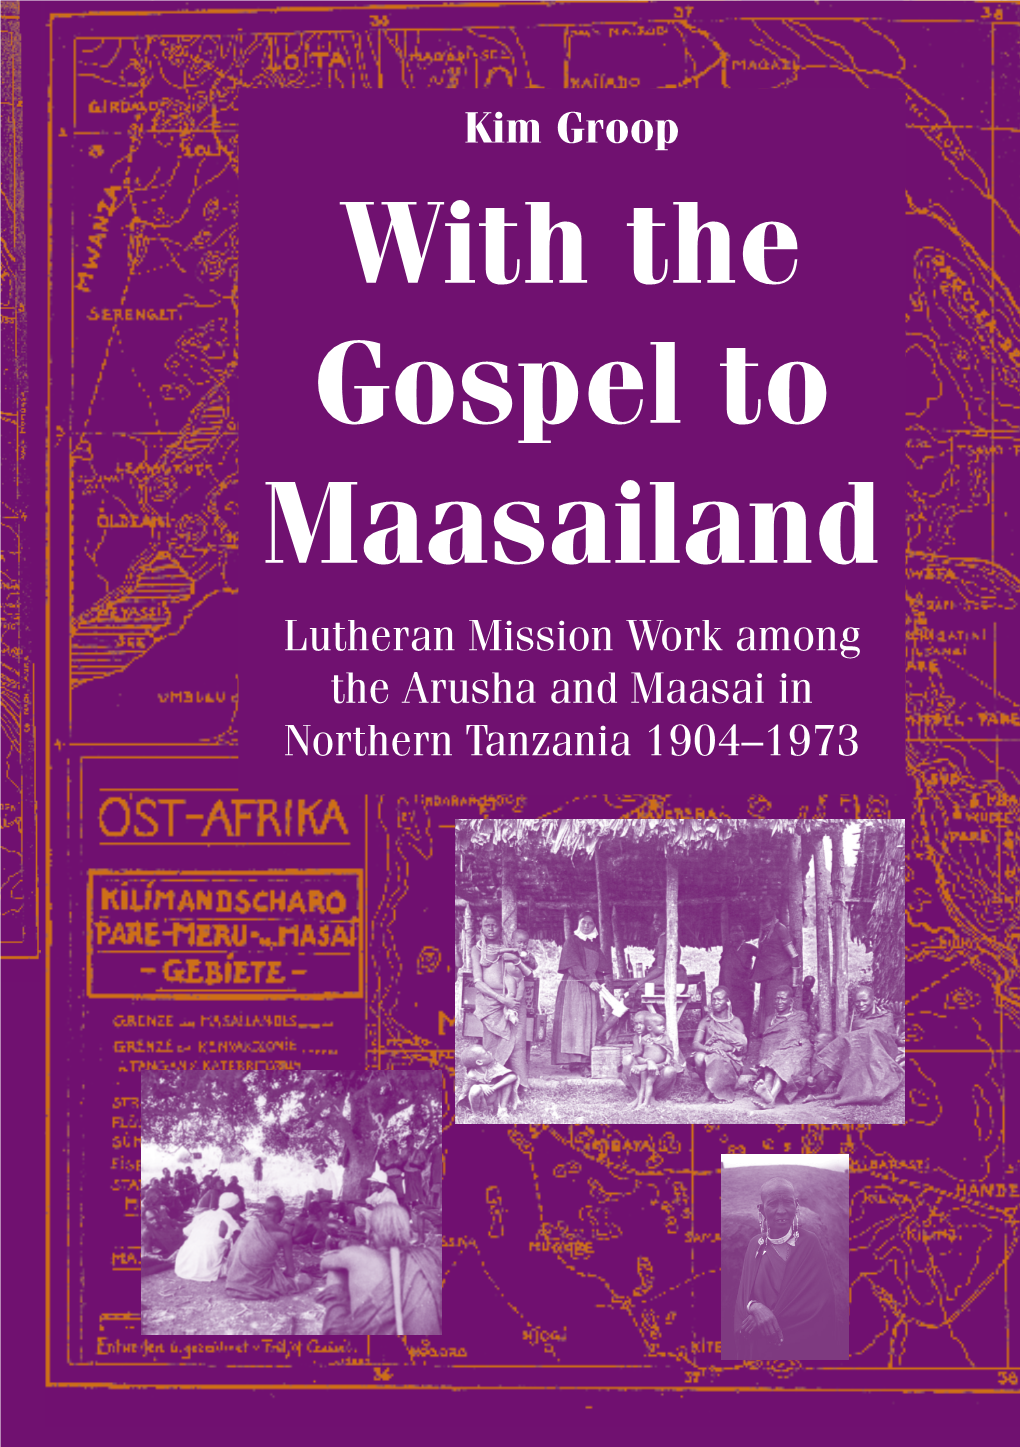 With the Gospel to Maasailand Kim Groop Studies the Lutheran ÅA Kim Groop